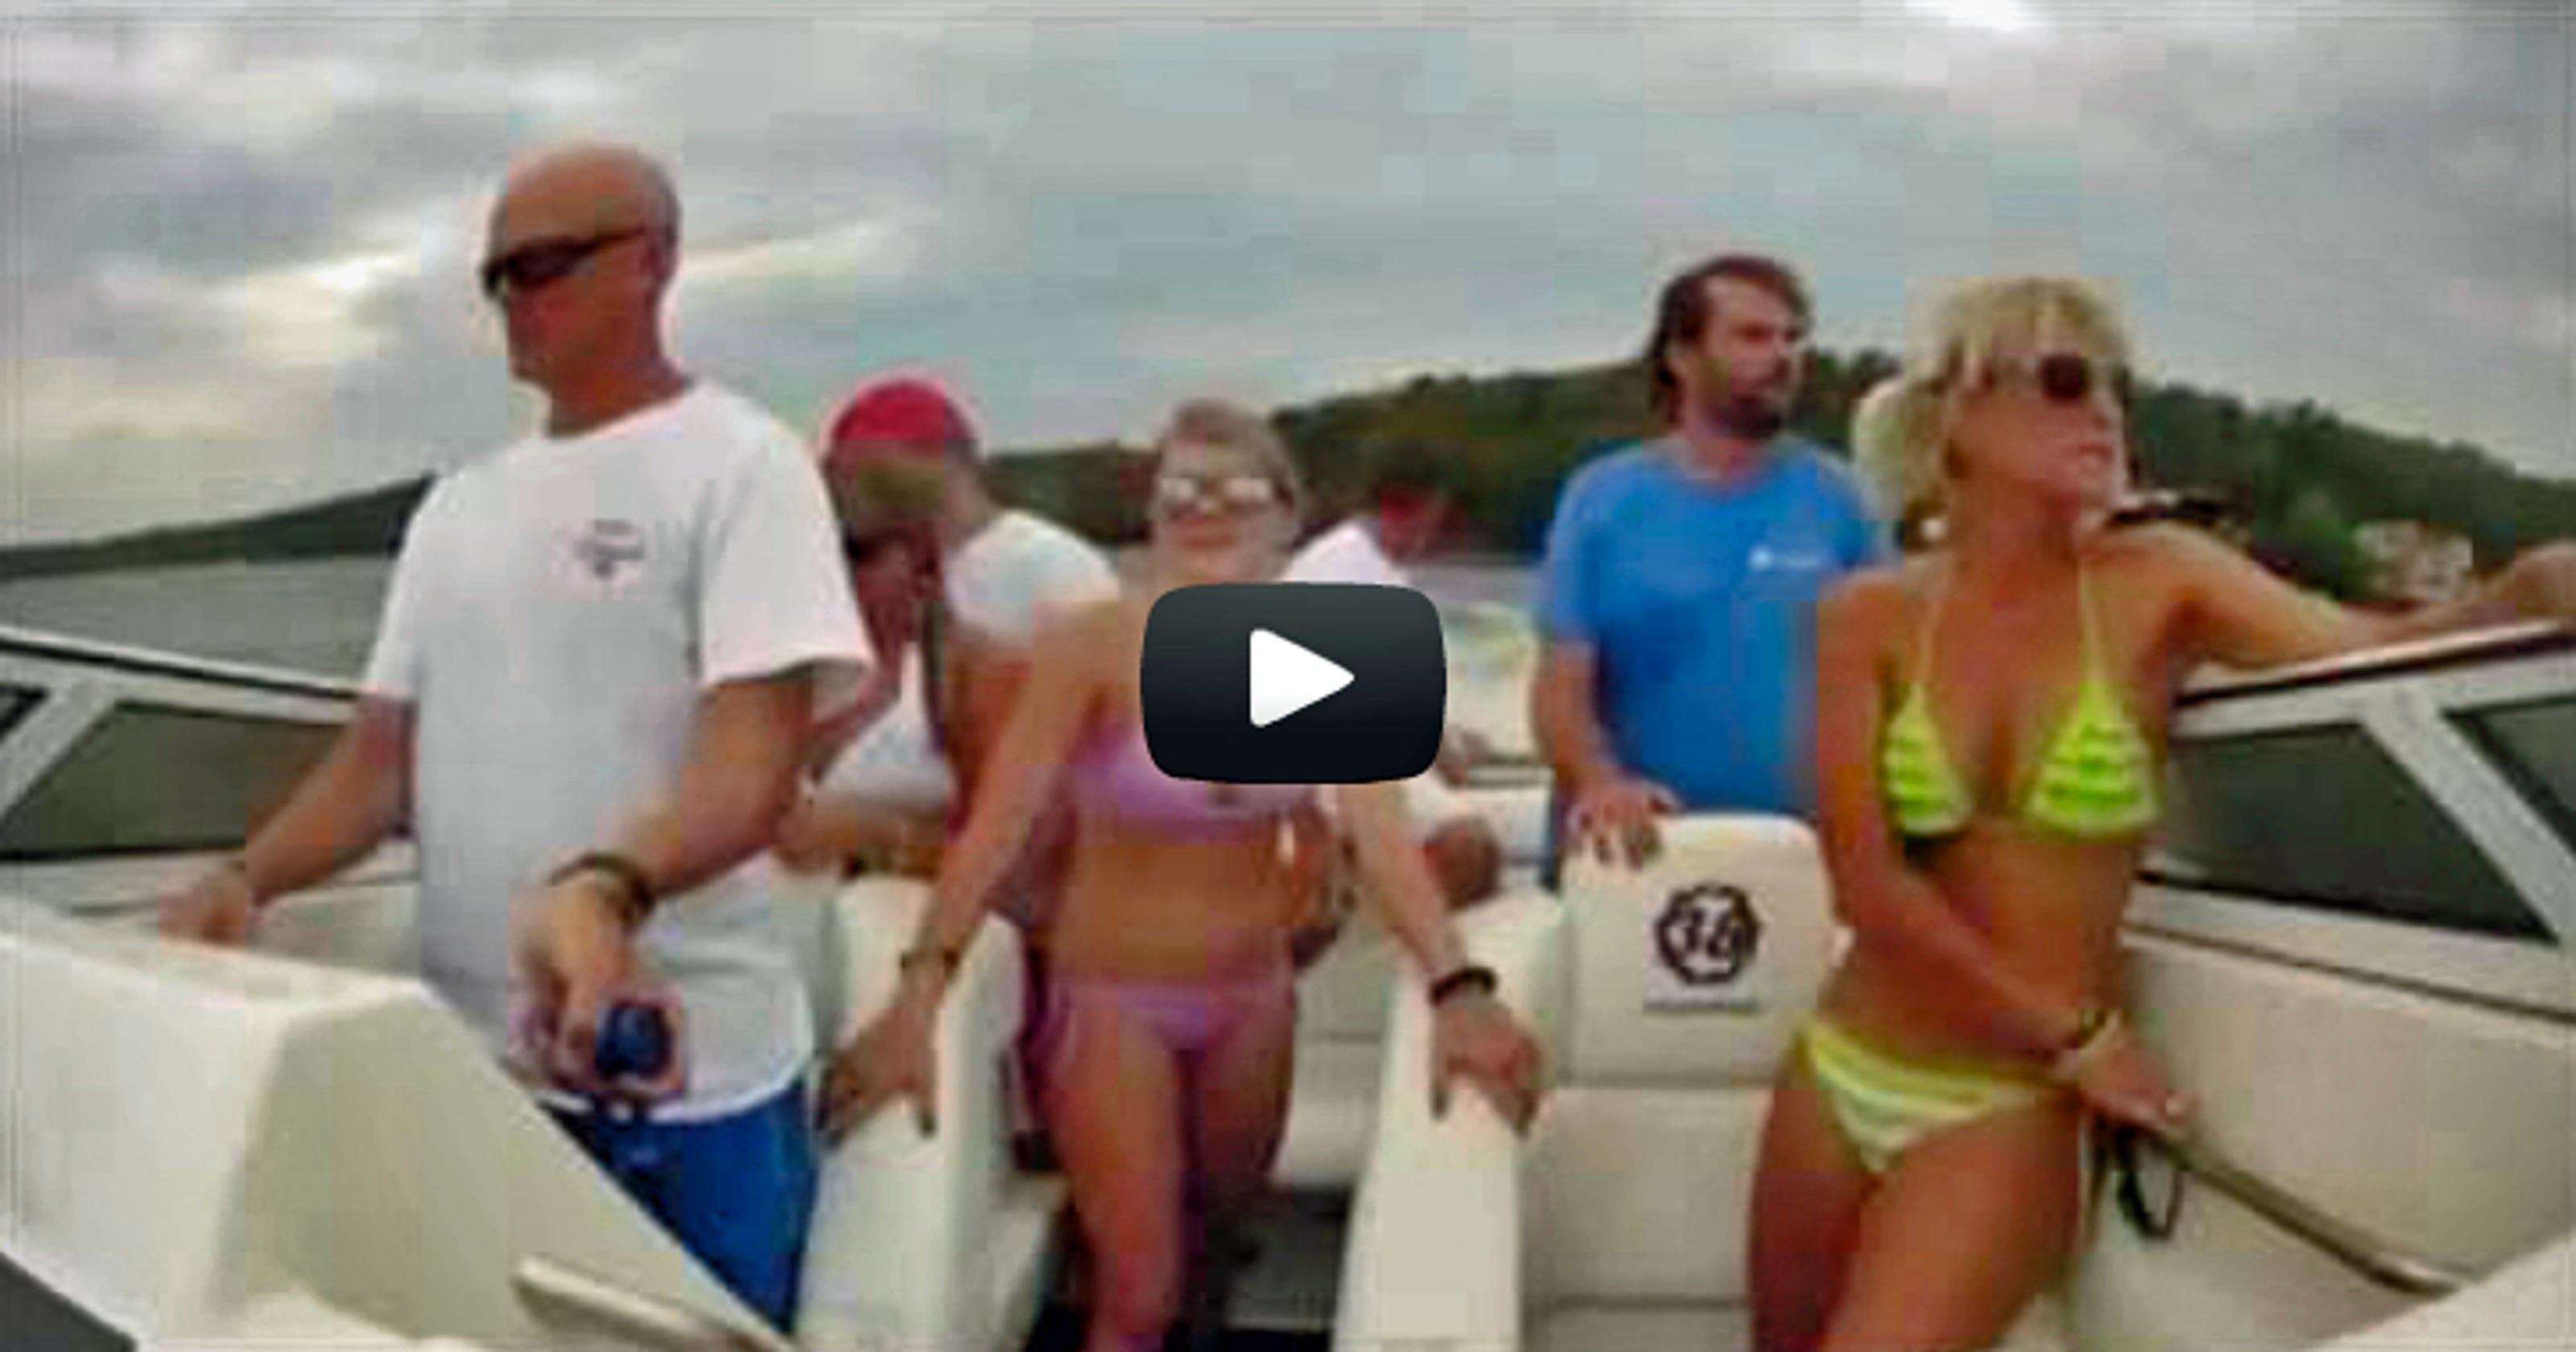 Video captures boat's violent wake crash at Lake of the Ozarks [VIDEO]